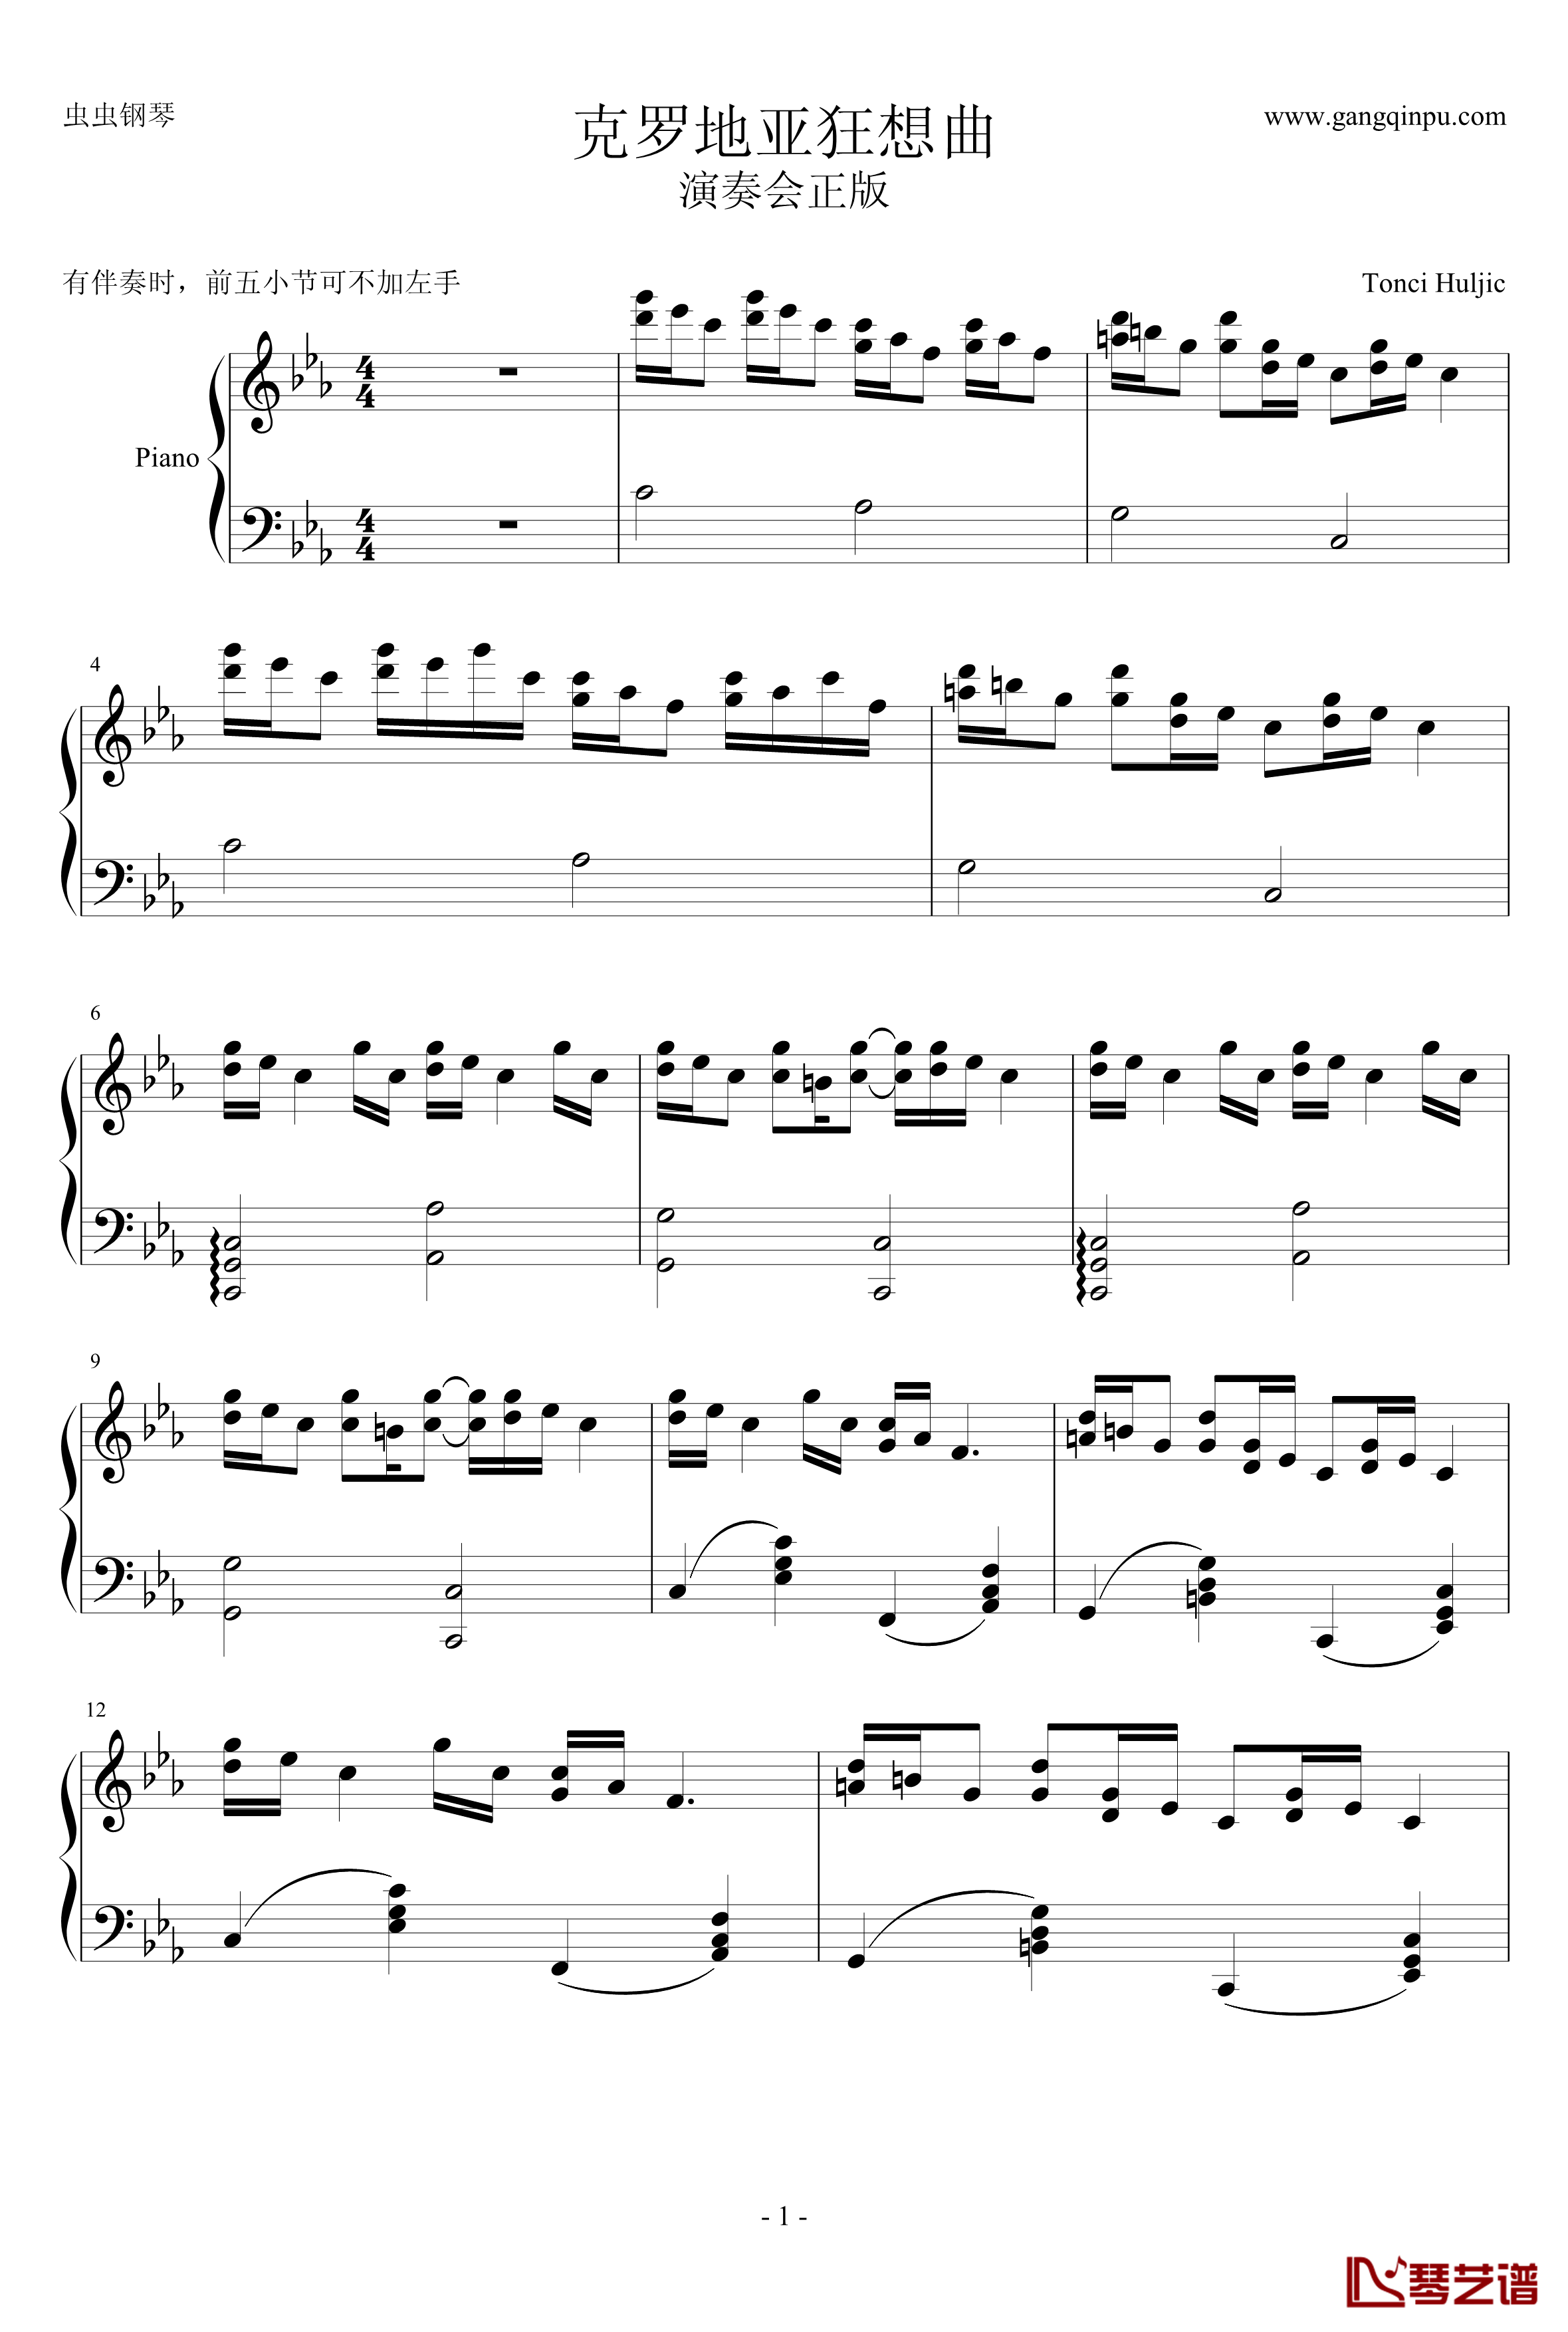 克罗地亚狂想曲钢琴谱-这个才是原版-马克西姆-Maksim·Mrvica1